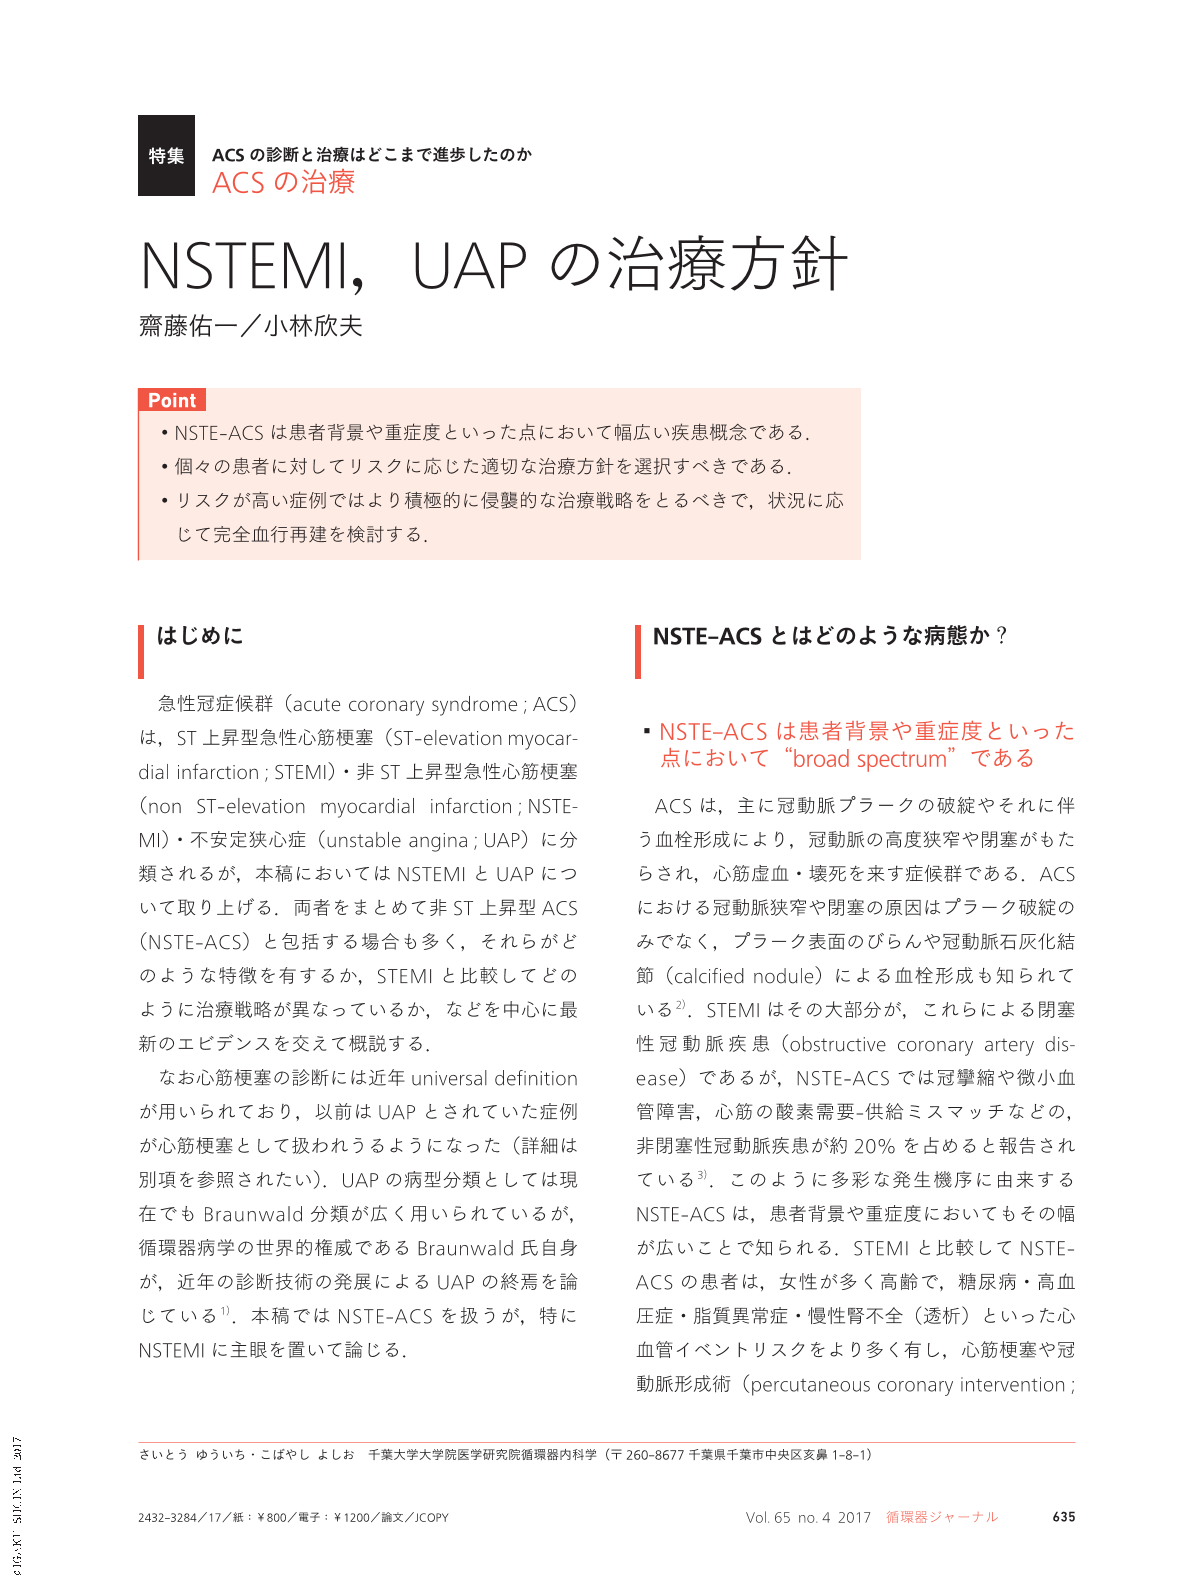 Nstemi Uapの治療方針 循環器ジャーナル 65巻4号 医書 Jp